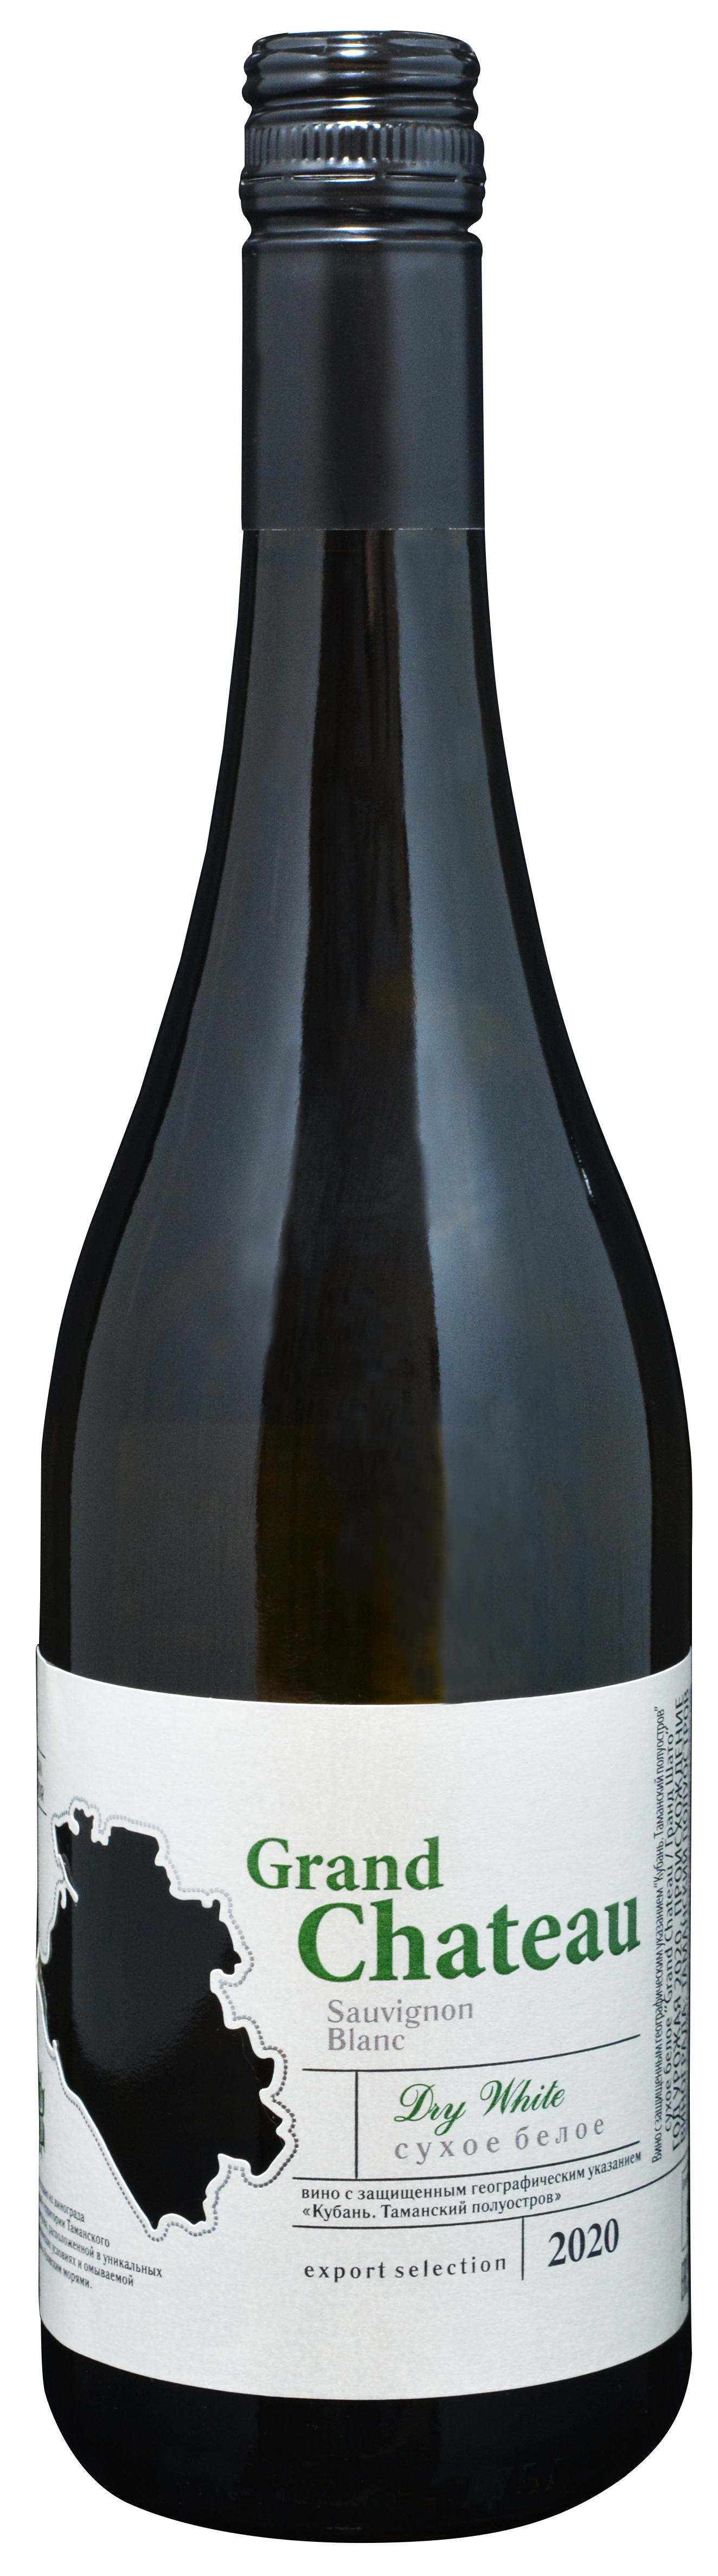 GRAND CHATEAU («Великий замок») - легкое  вино, из сорта винограда Совиньон Блан, которое имеет выразительный южный характер с изящными оттенками благородства. При выборе коллекции были учтены все вкусы самого широкого круга потребителей: это утонченные сухие и полусухие вина и высококачественные полусладкие.

Это вино - предмет нашей особой гордости.  Гастрономическое сочетание: блюдам из мяса птицы, рыбным блюдам, особенно хорошо сочетается с устрицами